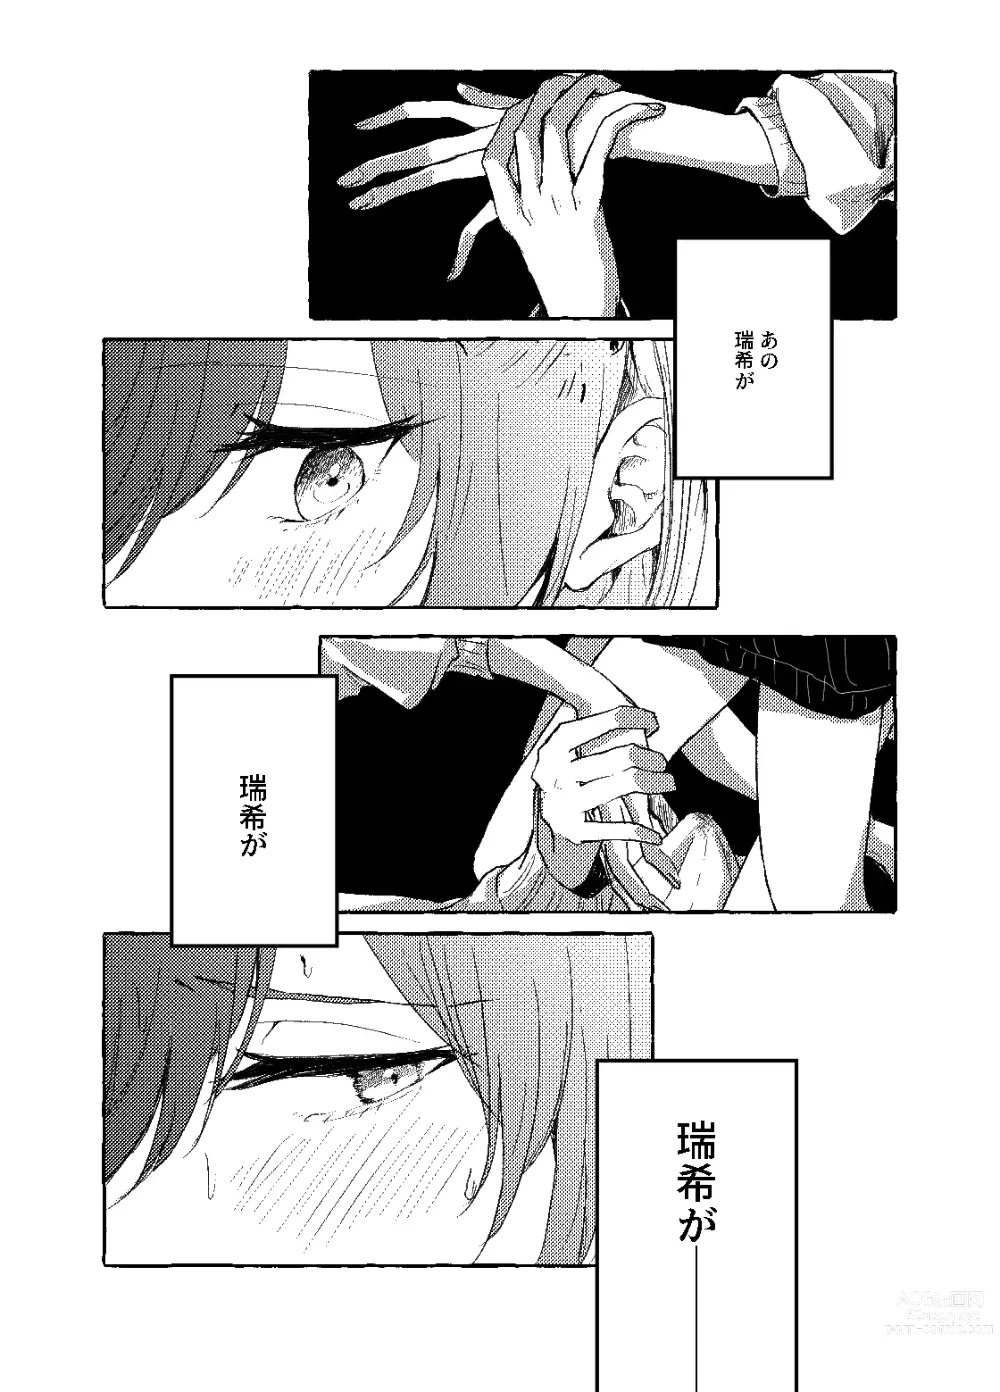 Page 15 of doujinshi Hakoniwa no Naka no Kimi